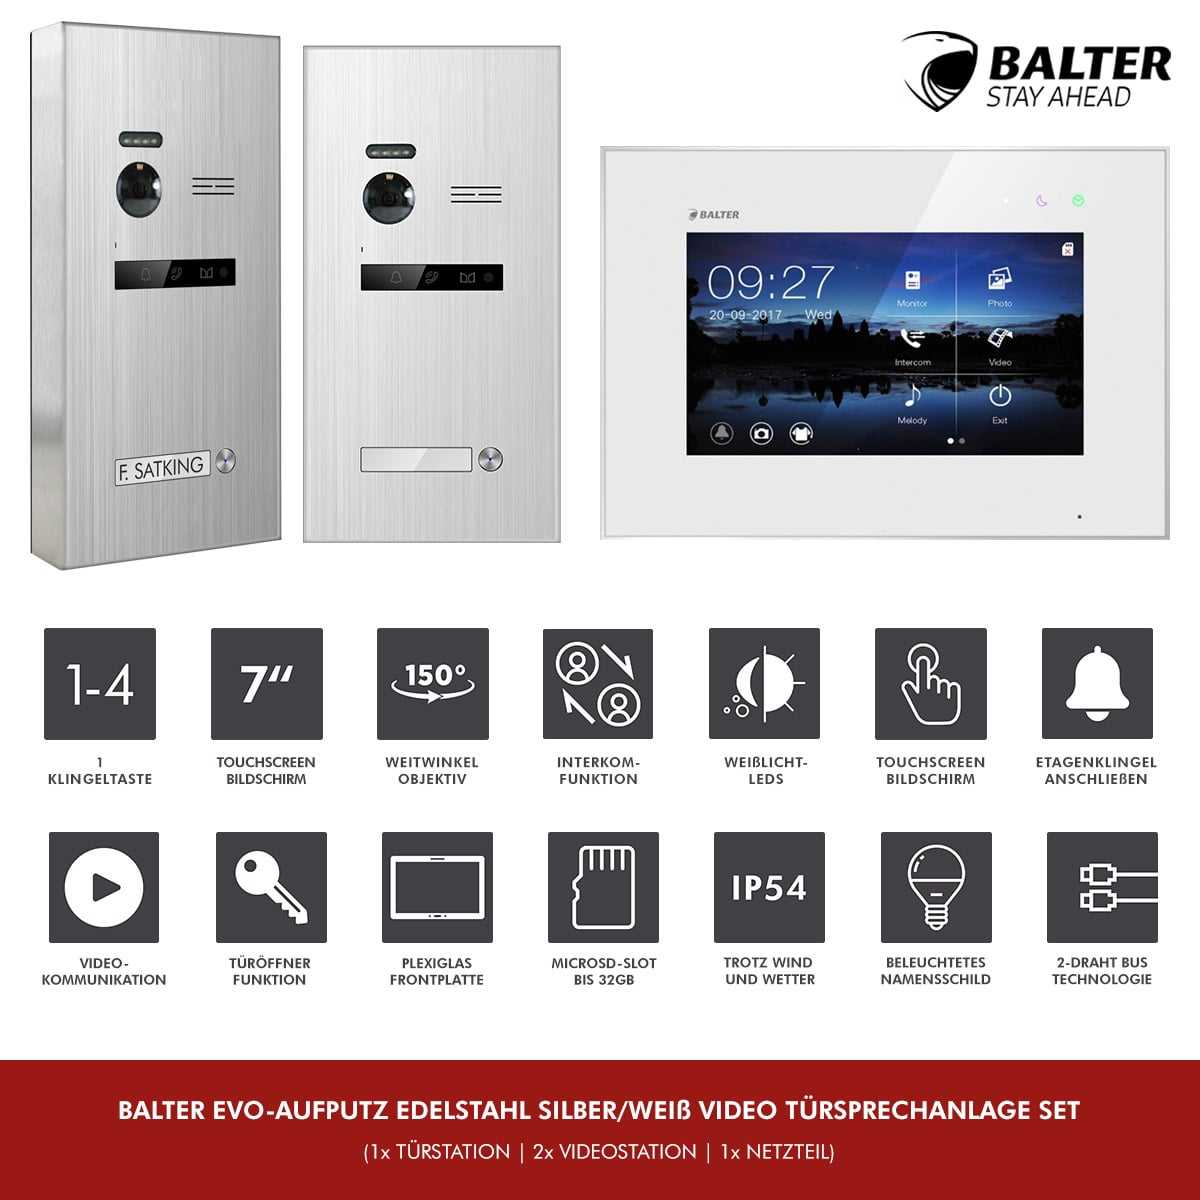 BALTER EVO Aufputz Edelstahl Video Türsprechanlagen Silber/Weiß Set 1 Familienhaus 2x 7“ LCD Monitor von Balter